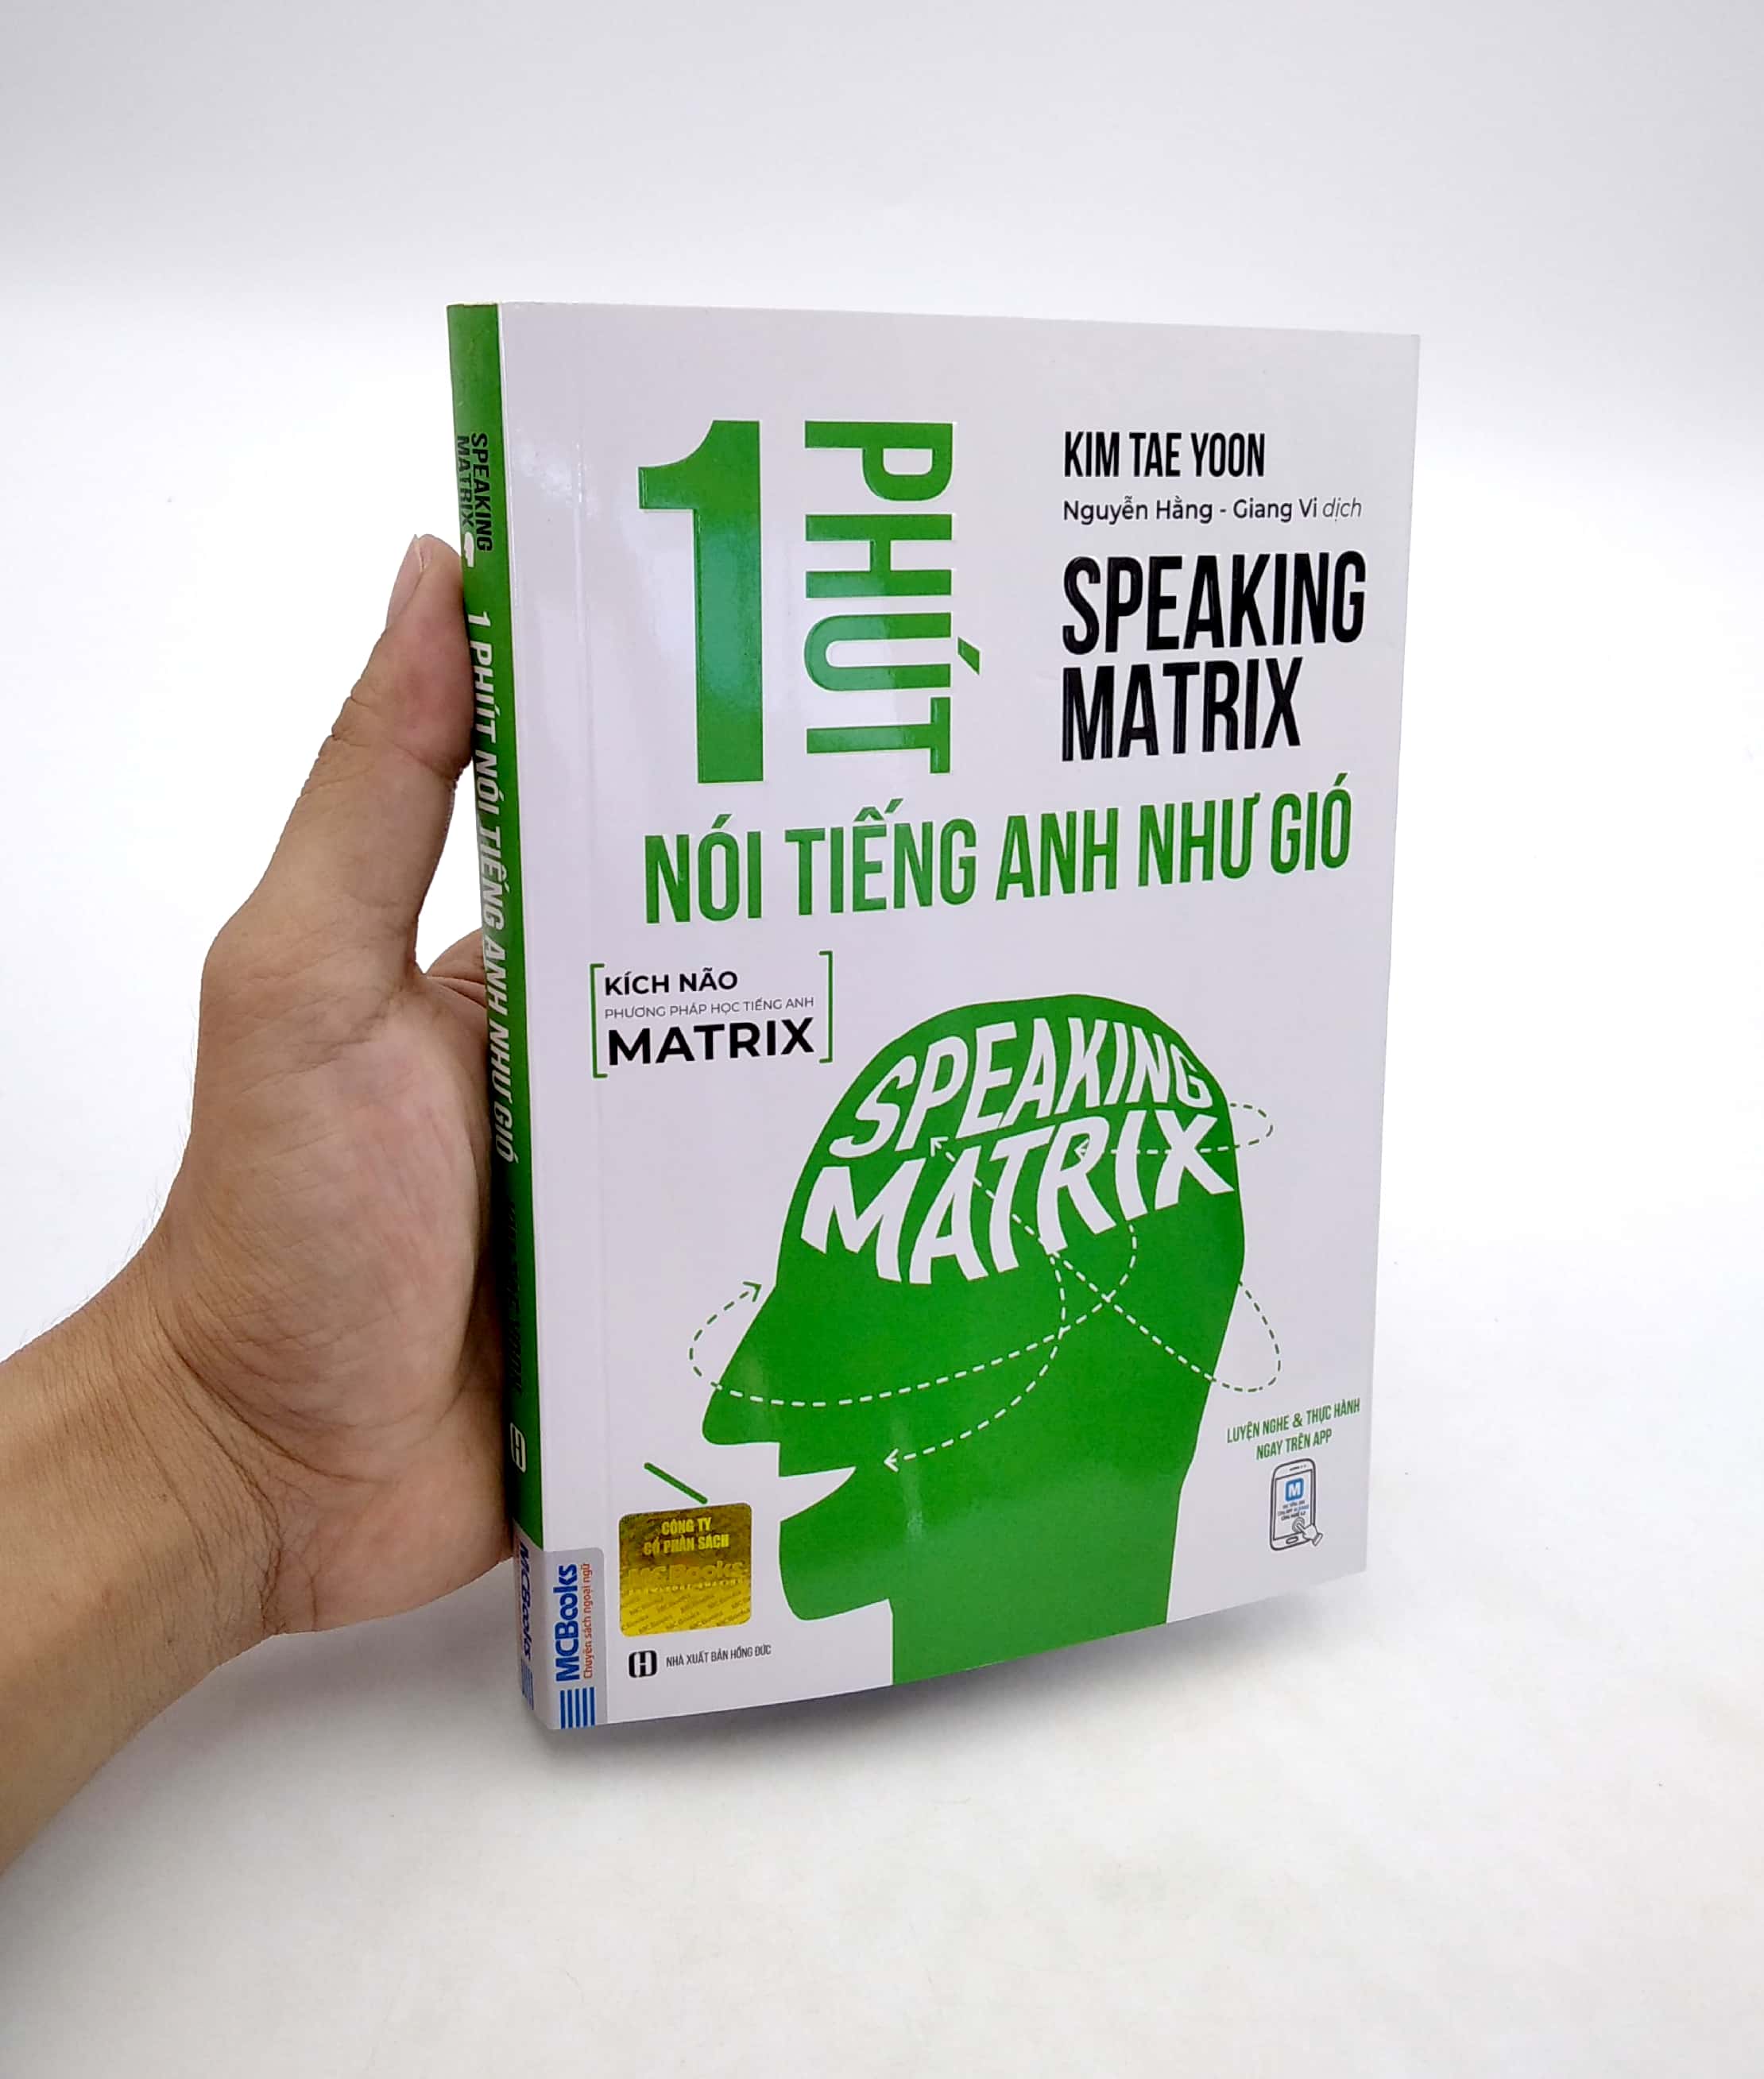 Speaking Matrix - 1 Phút Nói Tiếng Anh Như Gió PDF